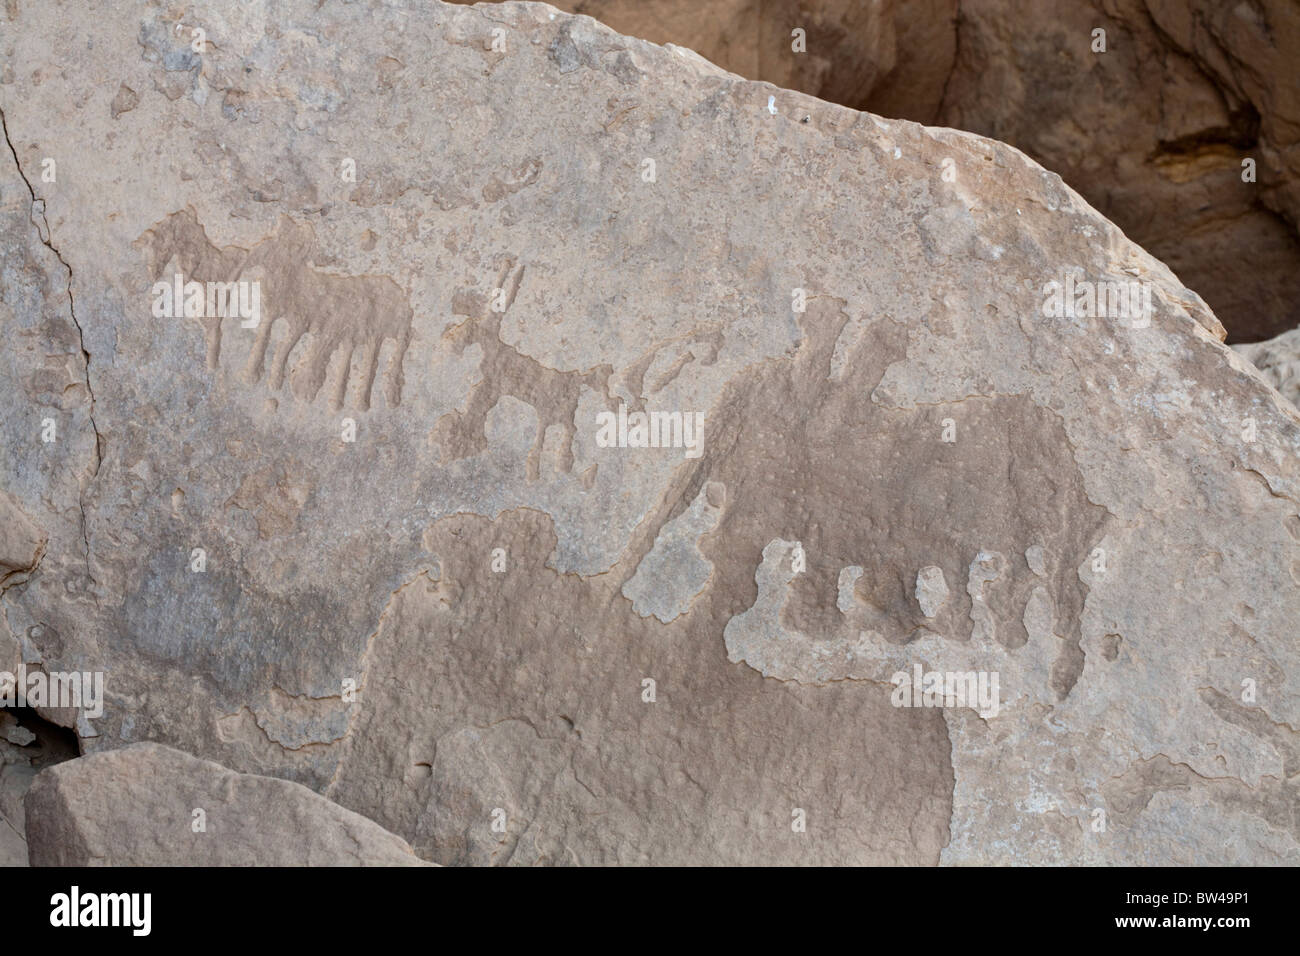 Geschnitzte alte Felszeichnungen zeigen Darstellungen von Elefanten in Wadi el-Atwani in der östlichen Wüste von Ägypten. Stockfoto